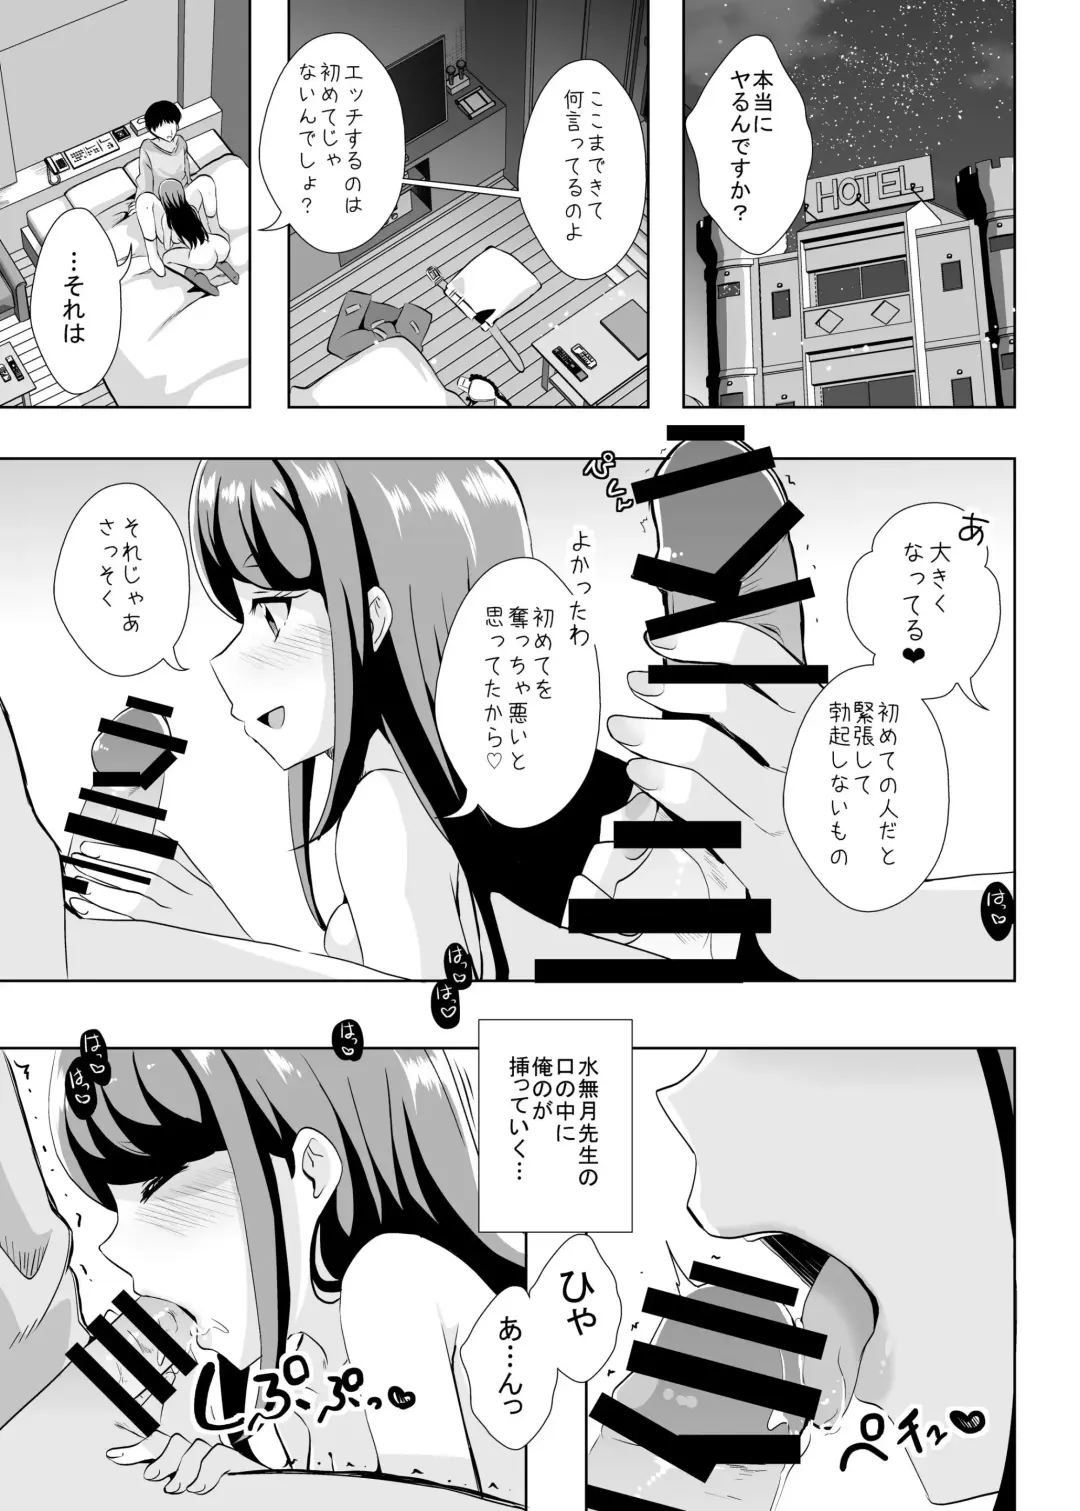 [Mira] Ecchi ga Suki ja Dame? Vol, 05 - Kibou no Chikara ~Otona Pretty Cure 23~ Fhentai.net - Page 3